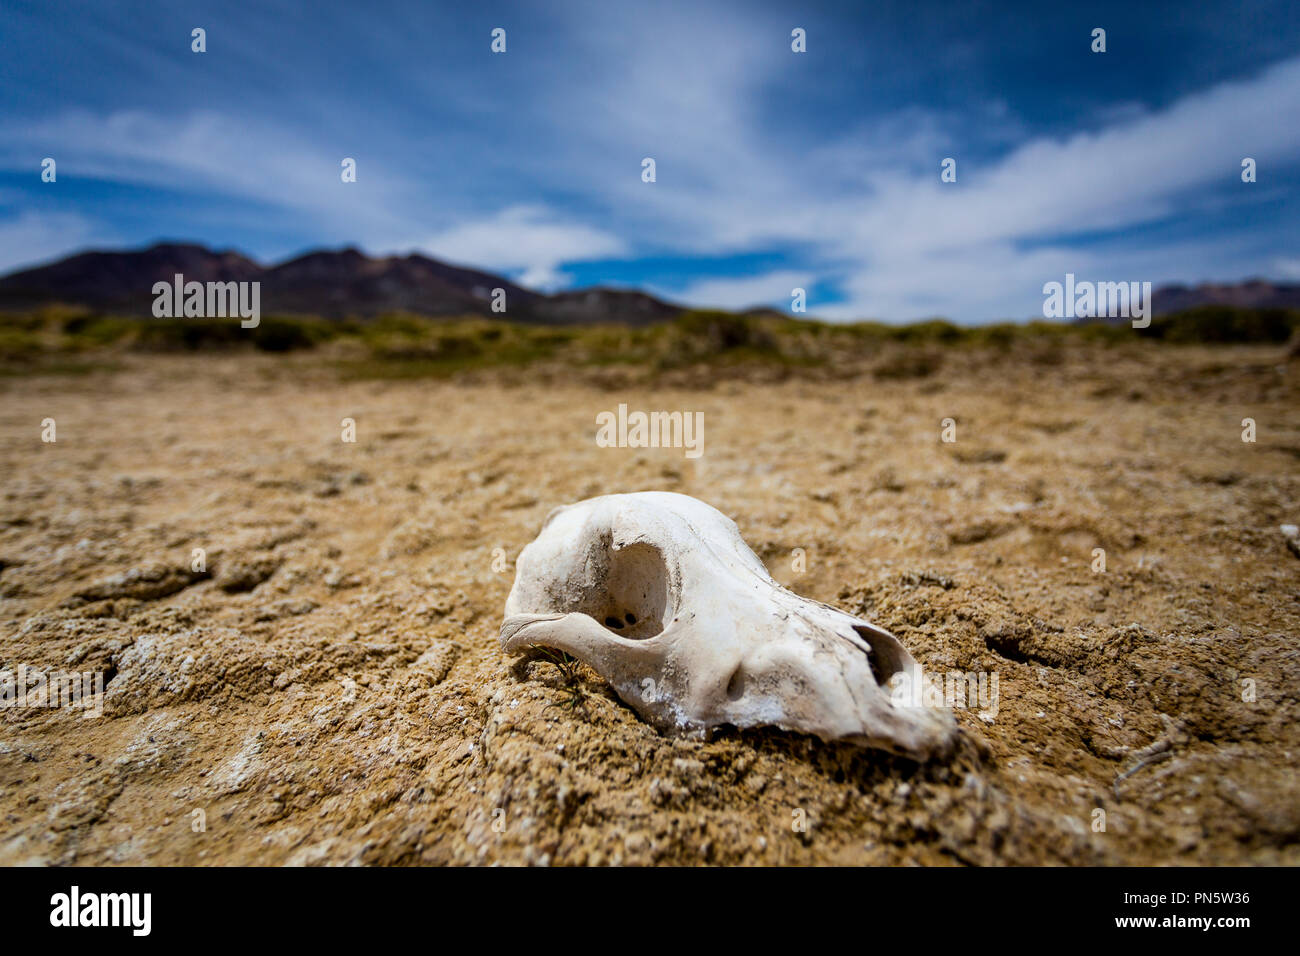 Tierschädel in Wüste Stock Photo